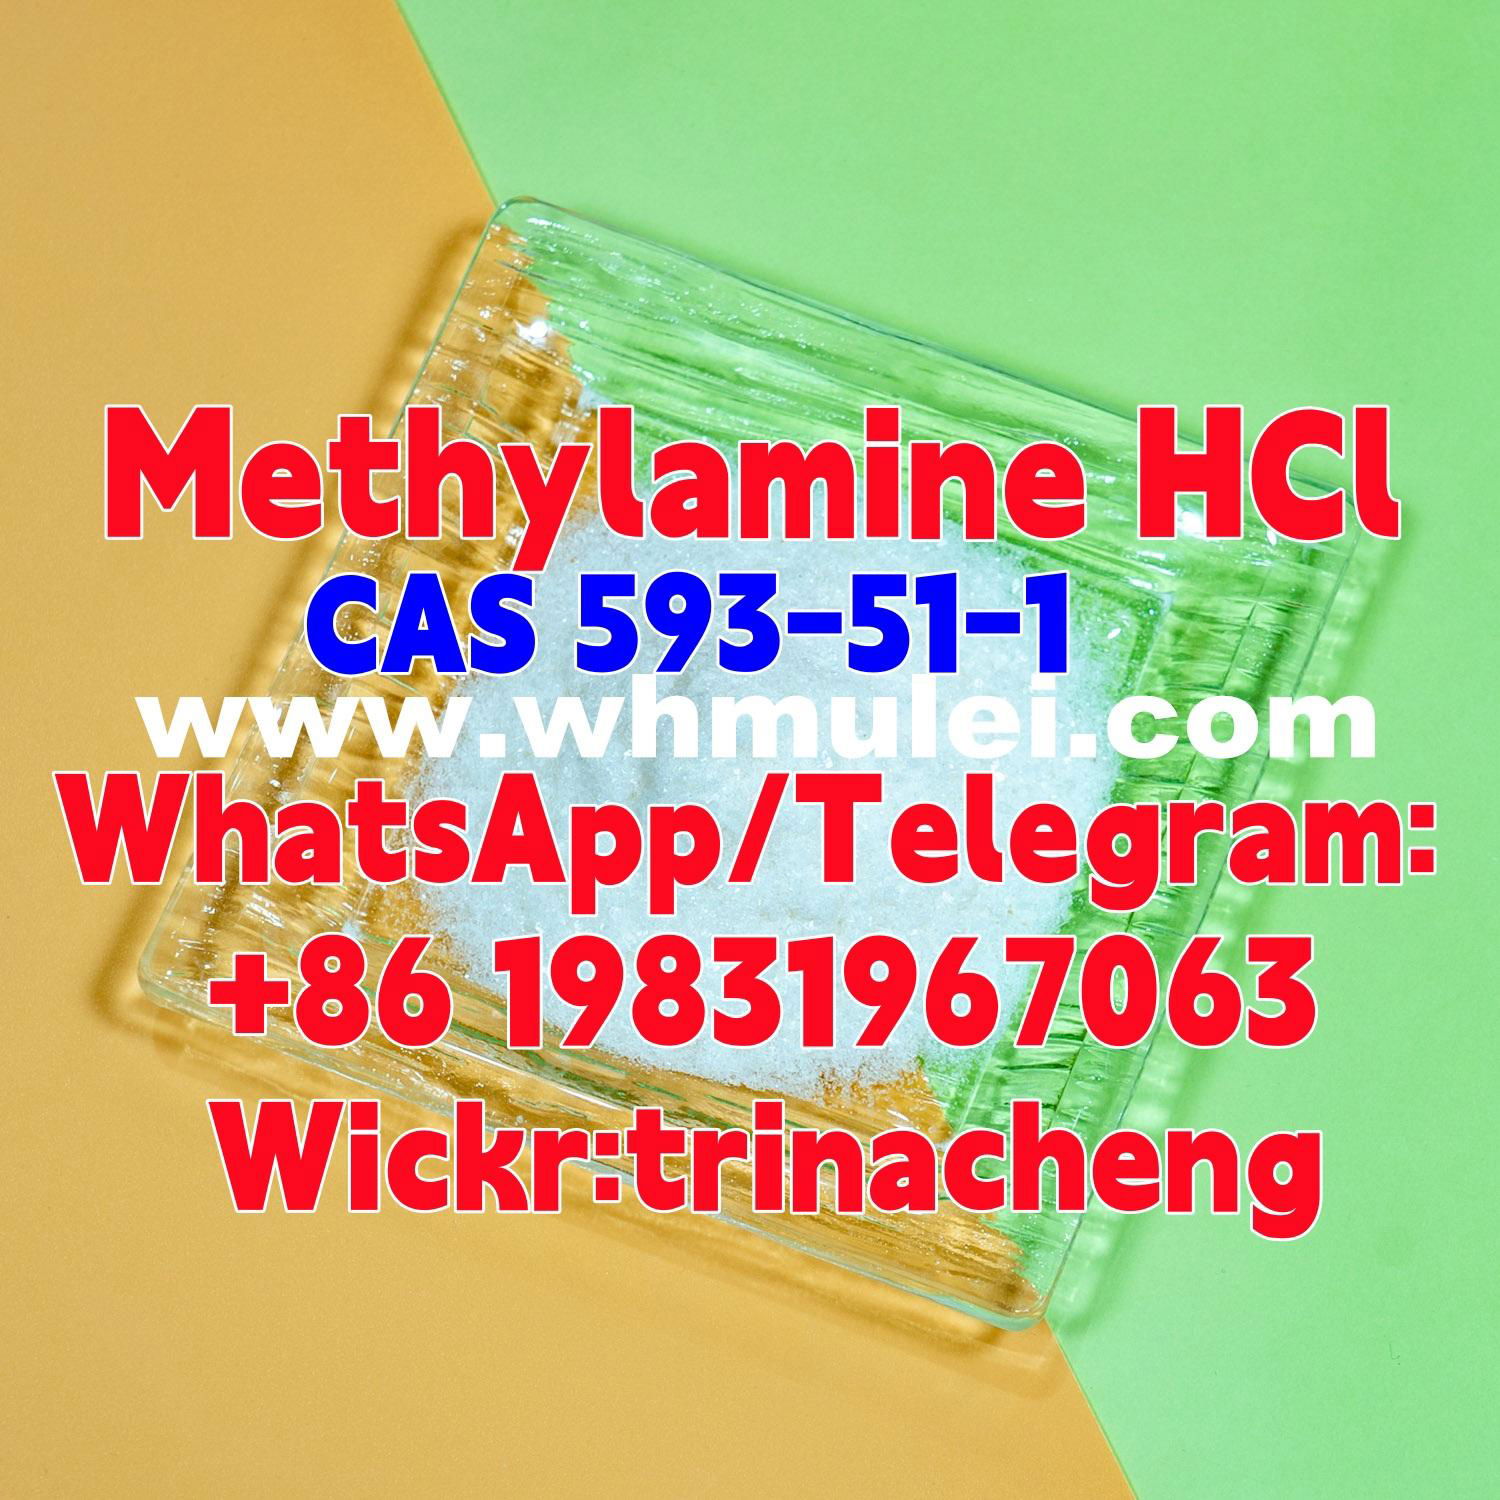 Sell raw powder CAS 593-51-1 Methylamine HCl / Methylamine hydrochloride 5